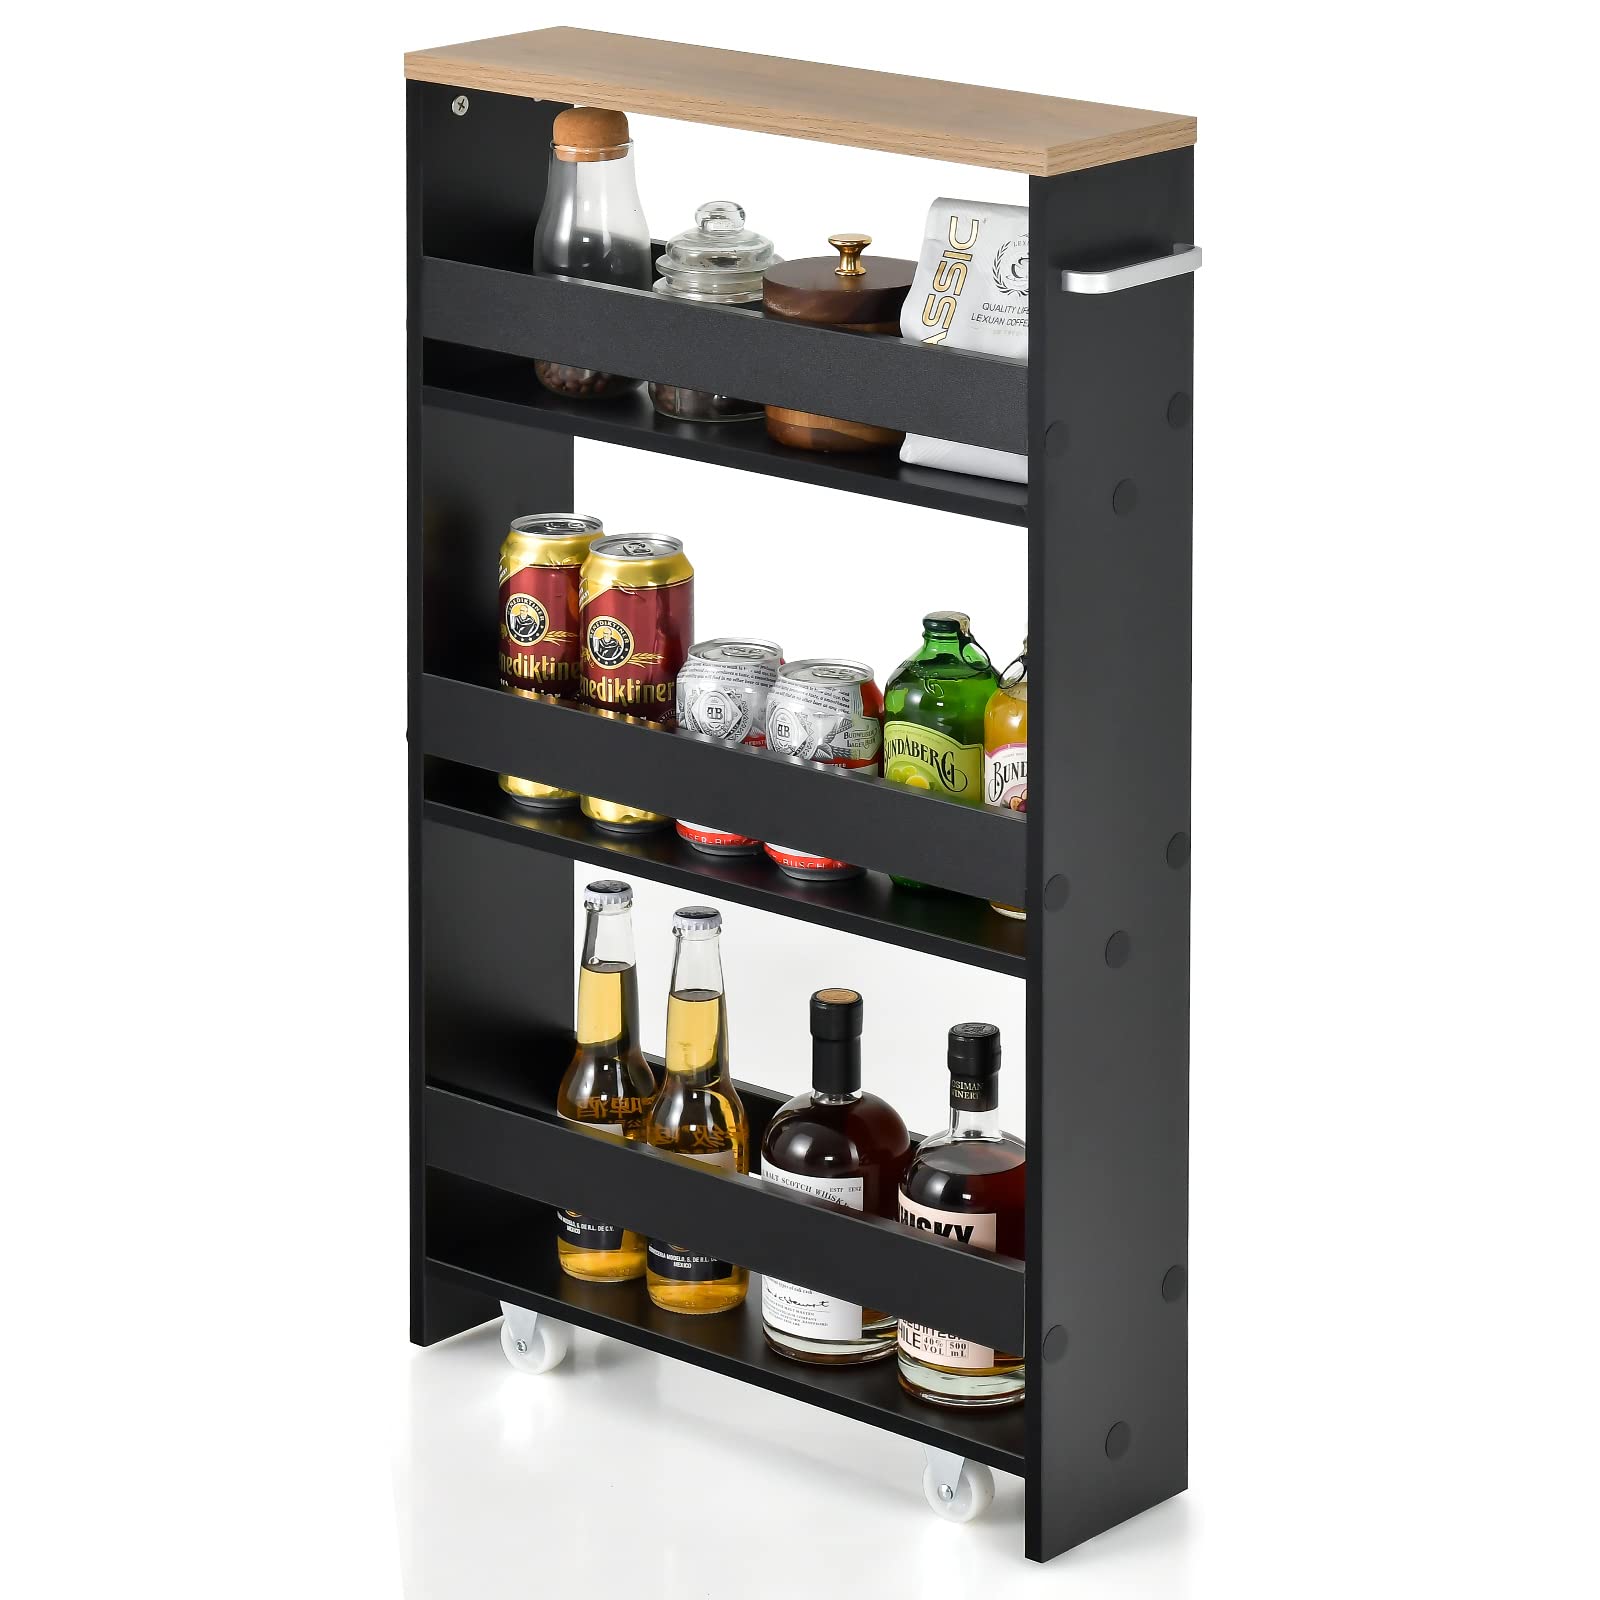 Giantex Kitchen Slim Storage Cart 4 Tier, Rolling Side Storage Cabinet w/Handle